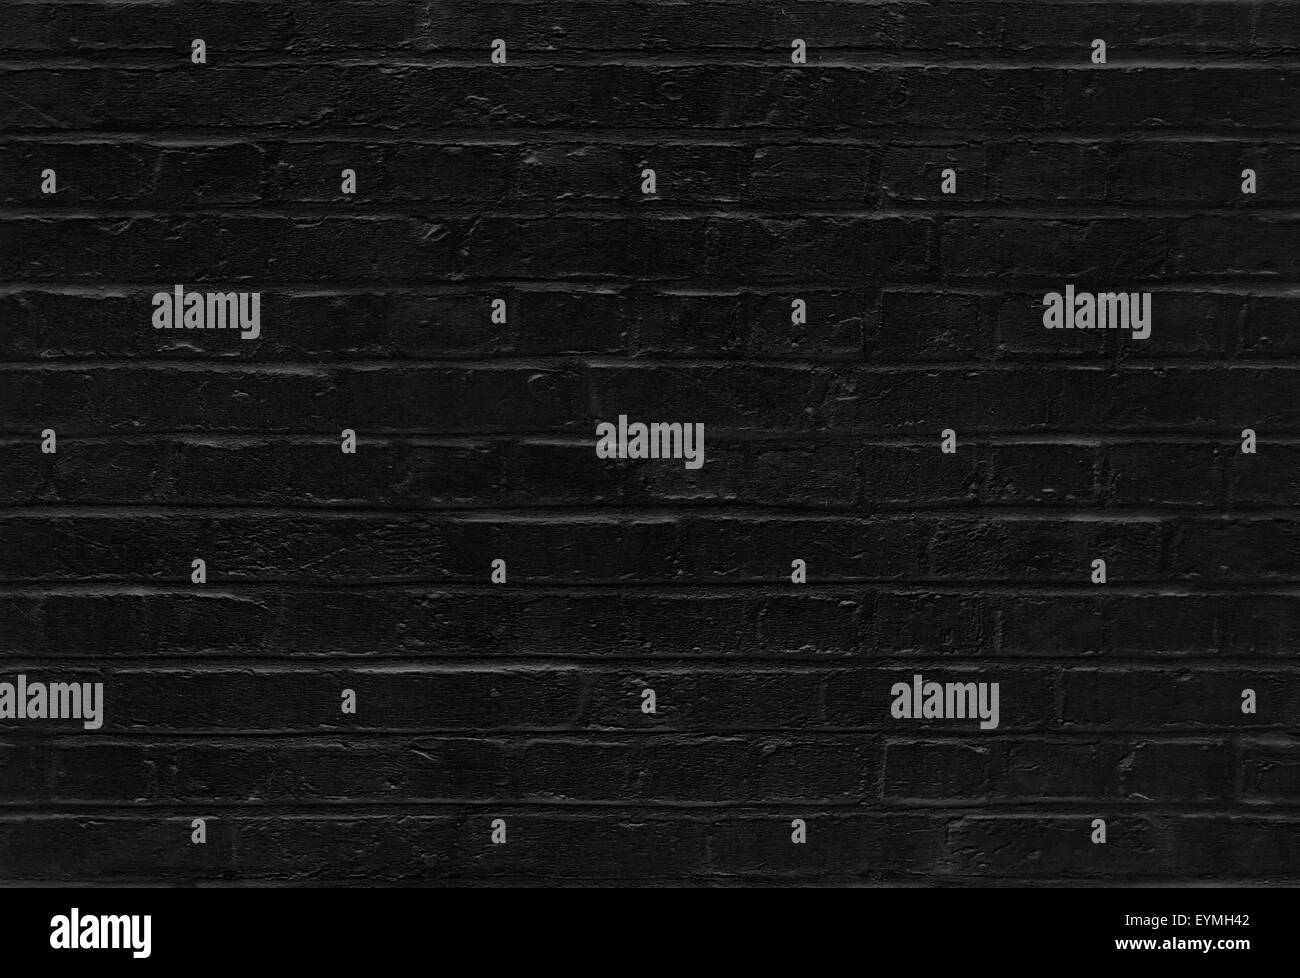 Mur de brique noire transparente texture background pattern Banque D'Images